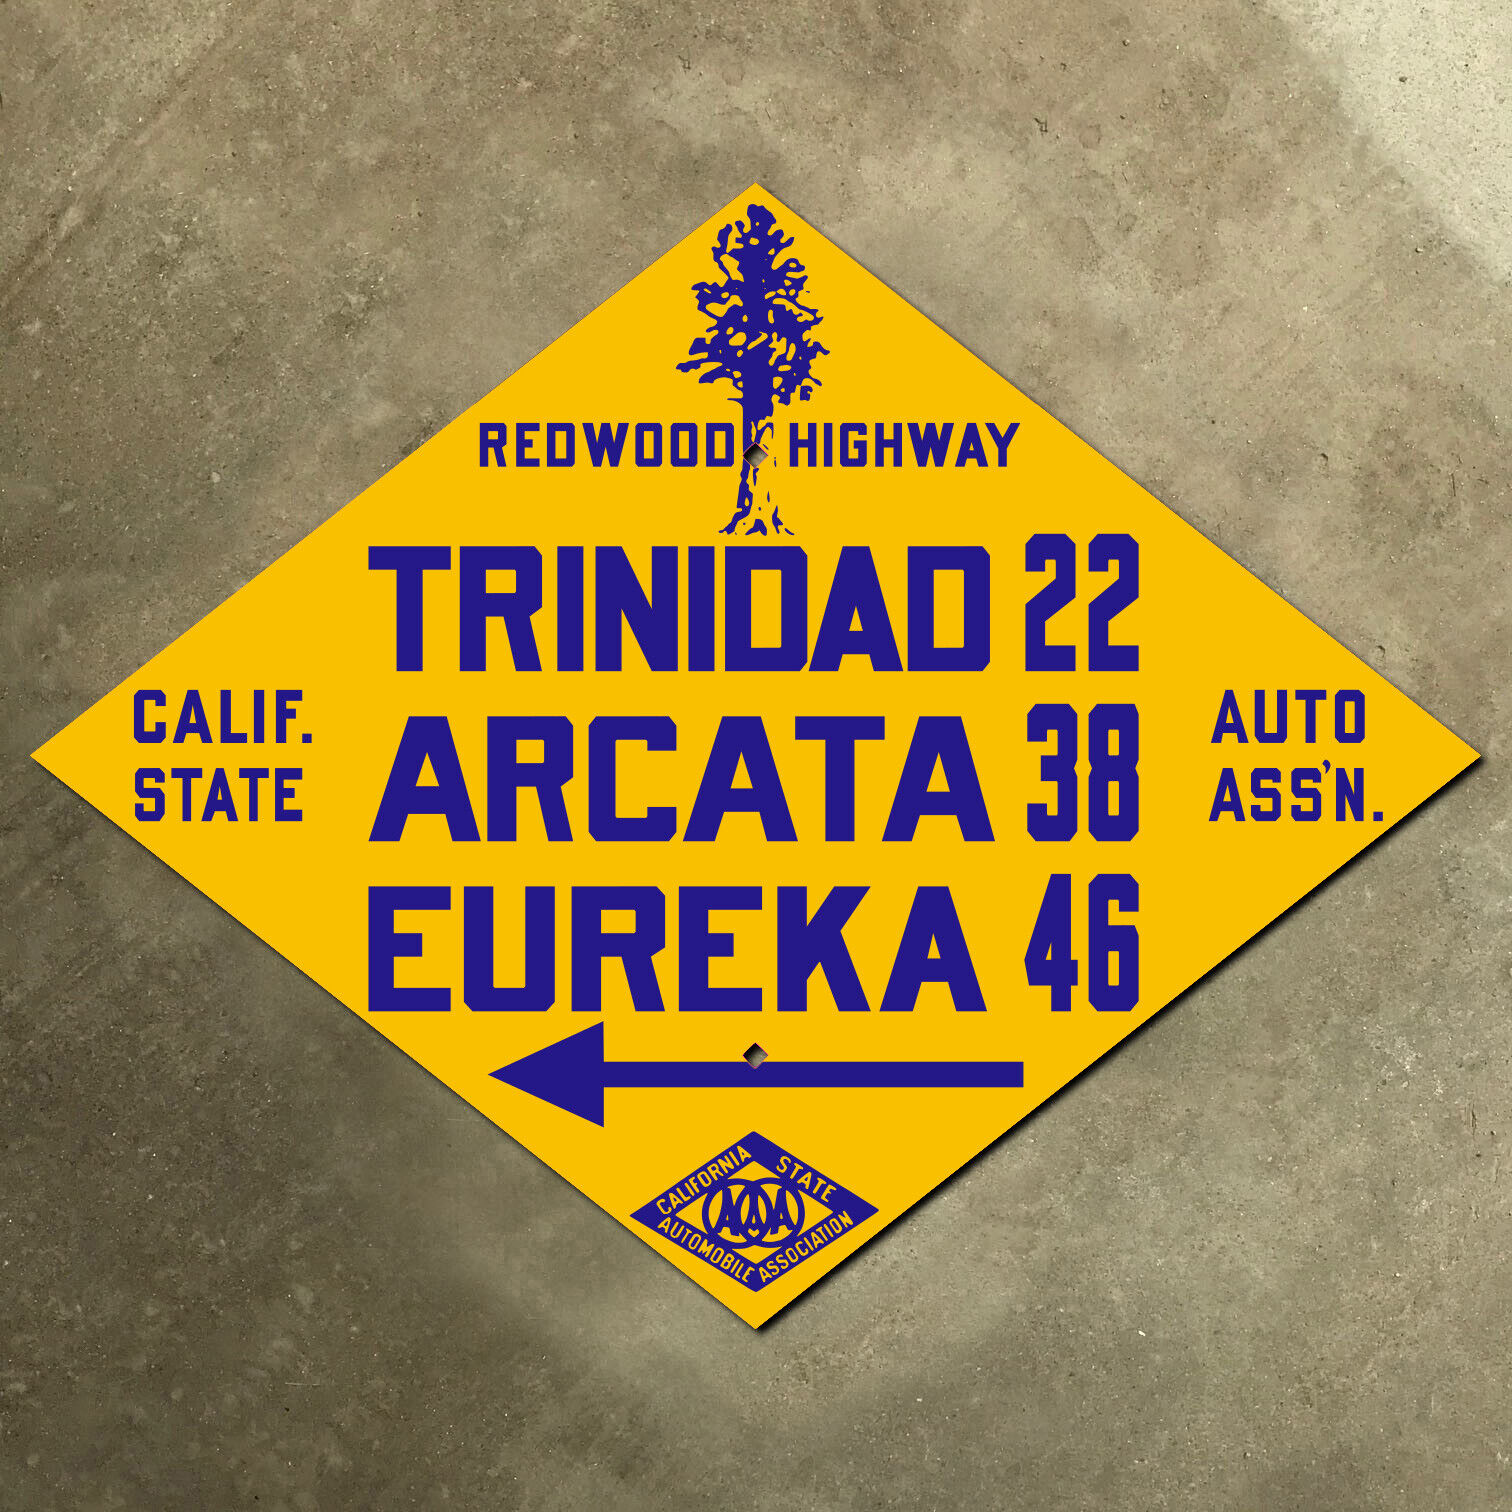 Redwood Highway California CSAA Trinidad road sign auto club US 101 Eureka 29